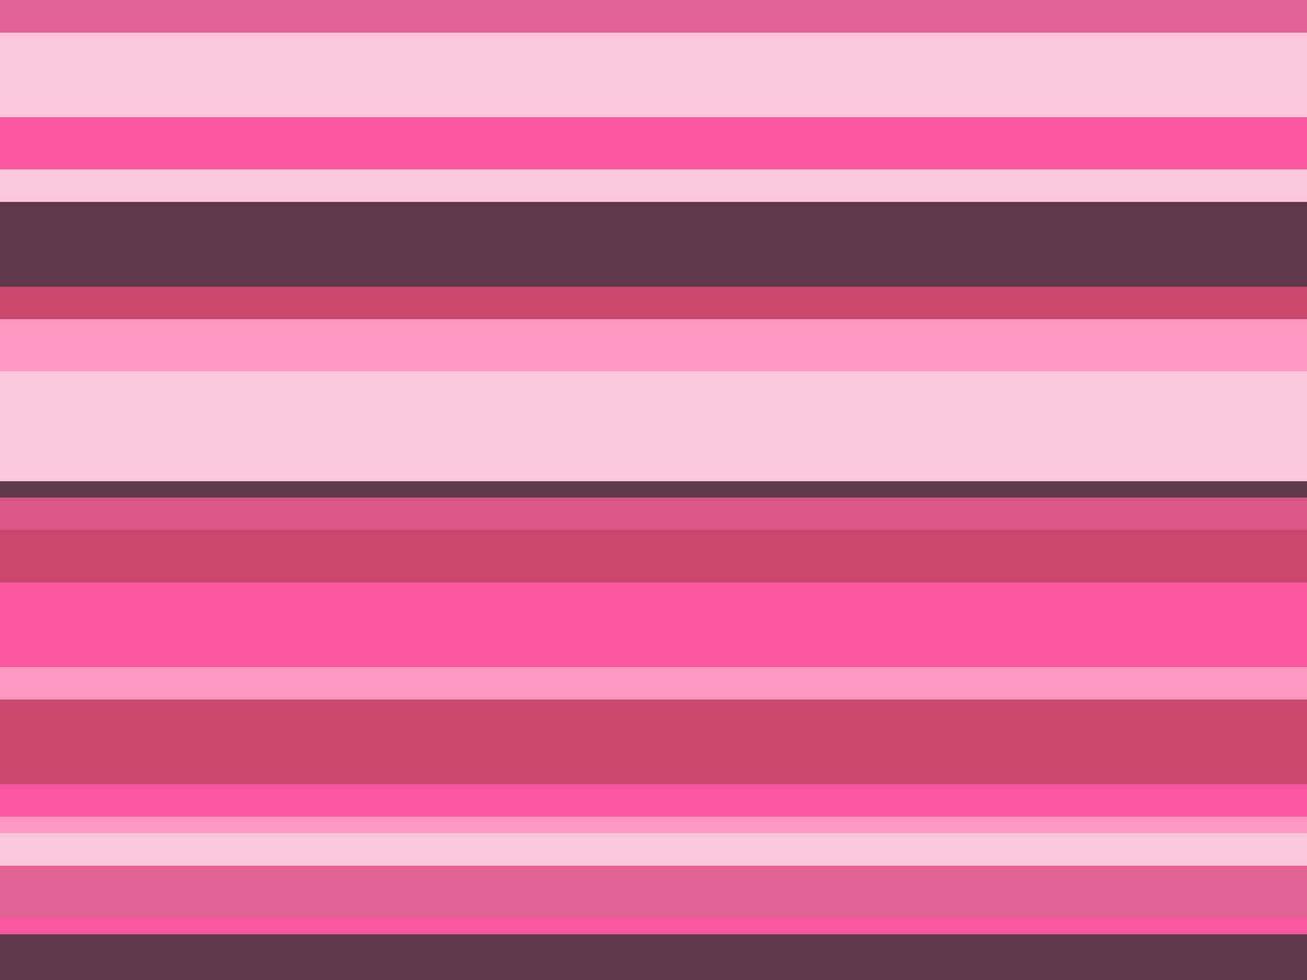 Rosa geometrisch Hintergrund. Schatten von Rosa Linien. Vektor Illustration zum Startseite Design, Poster, Werbung, Banner